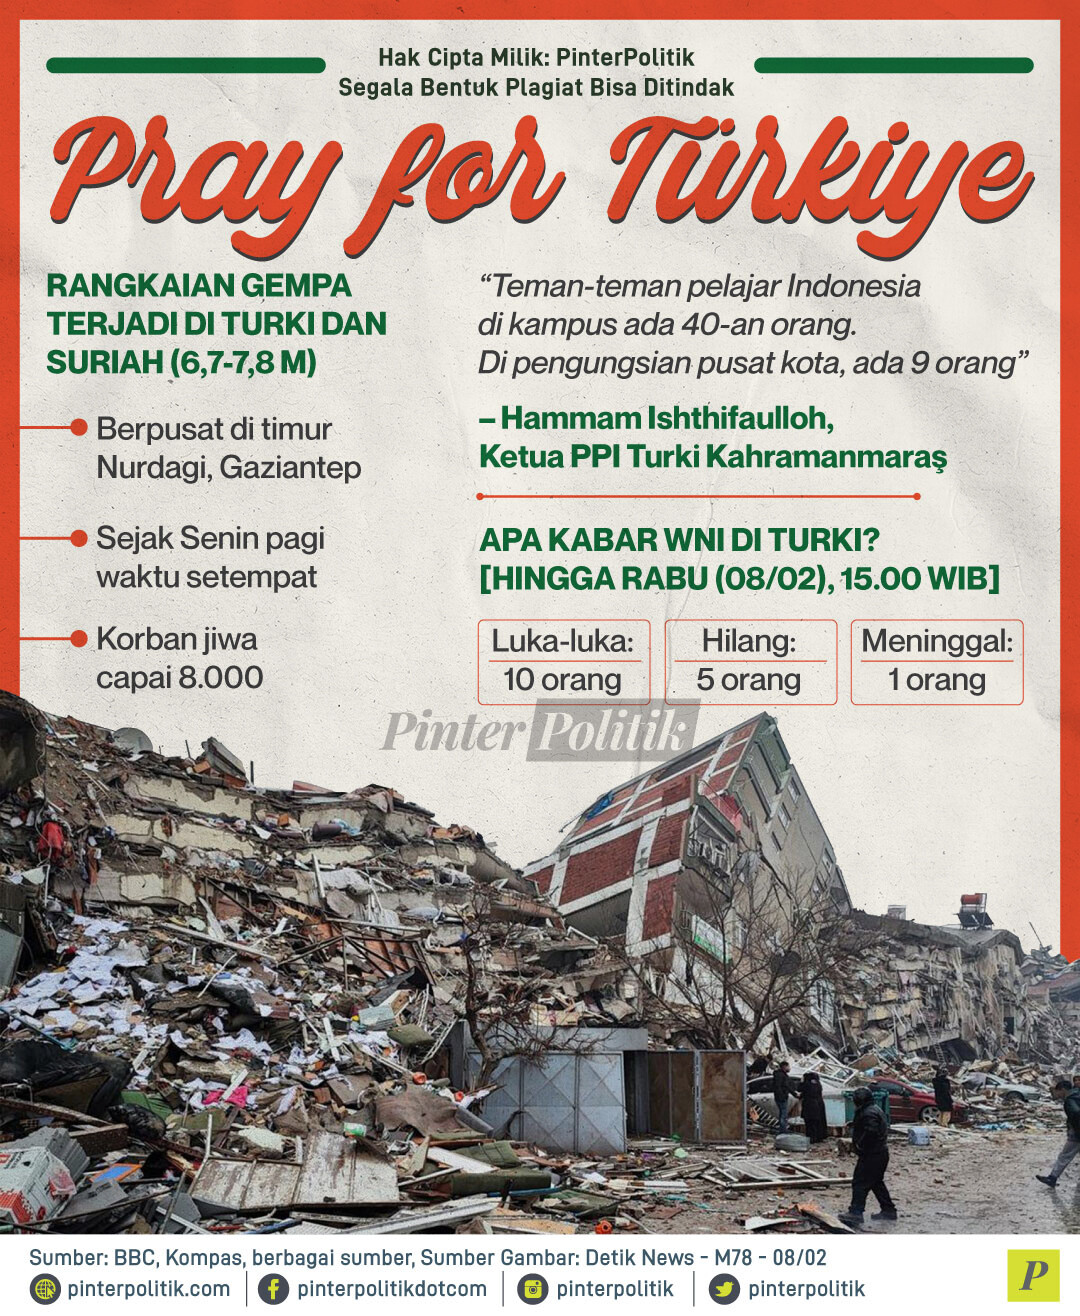 pray for turkiye ed.